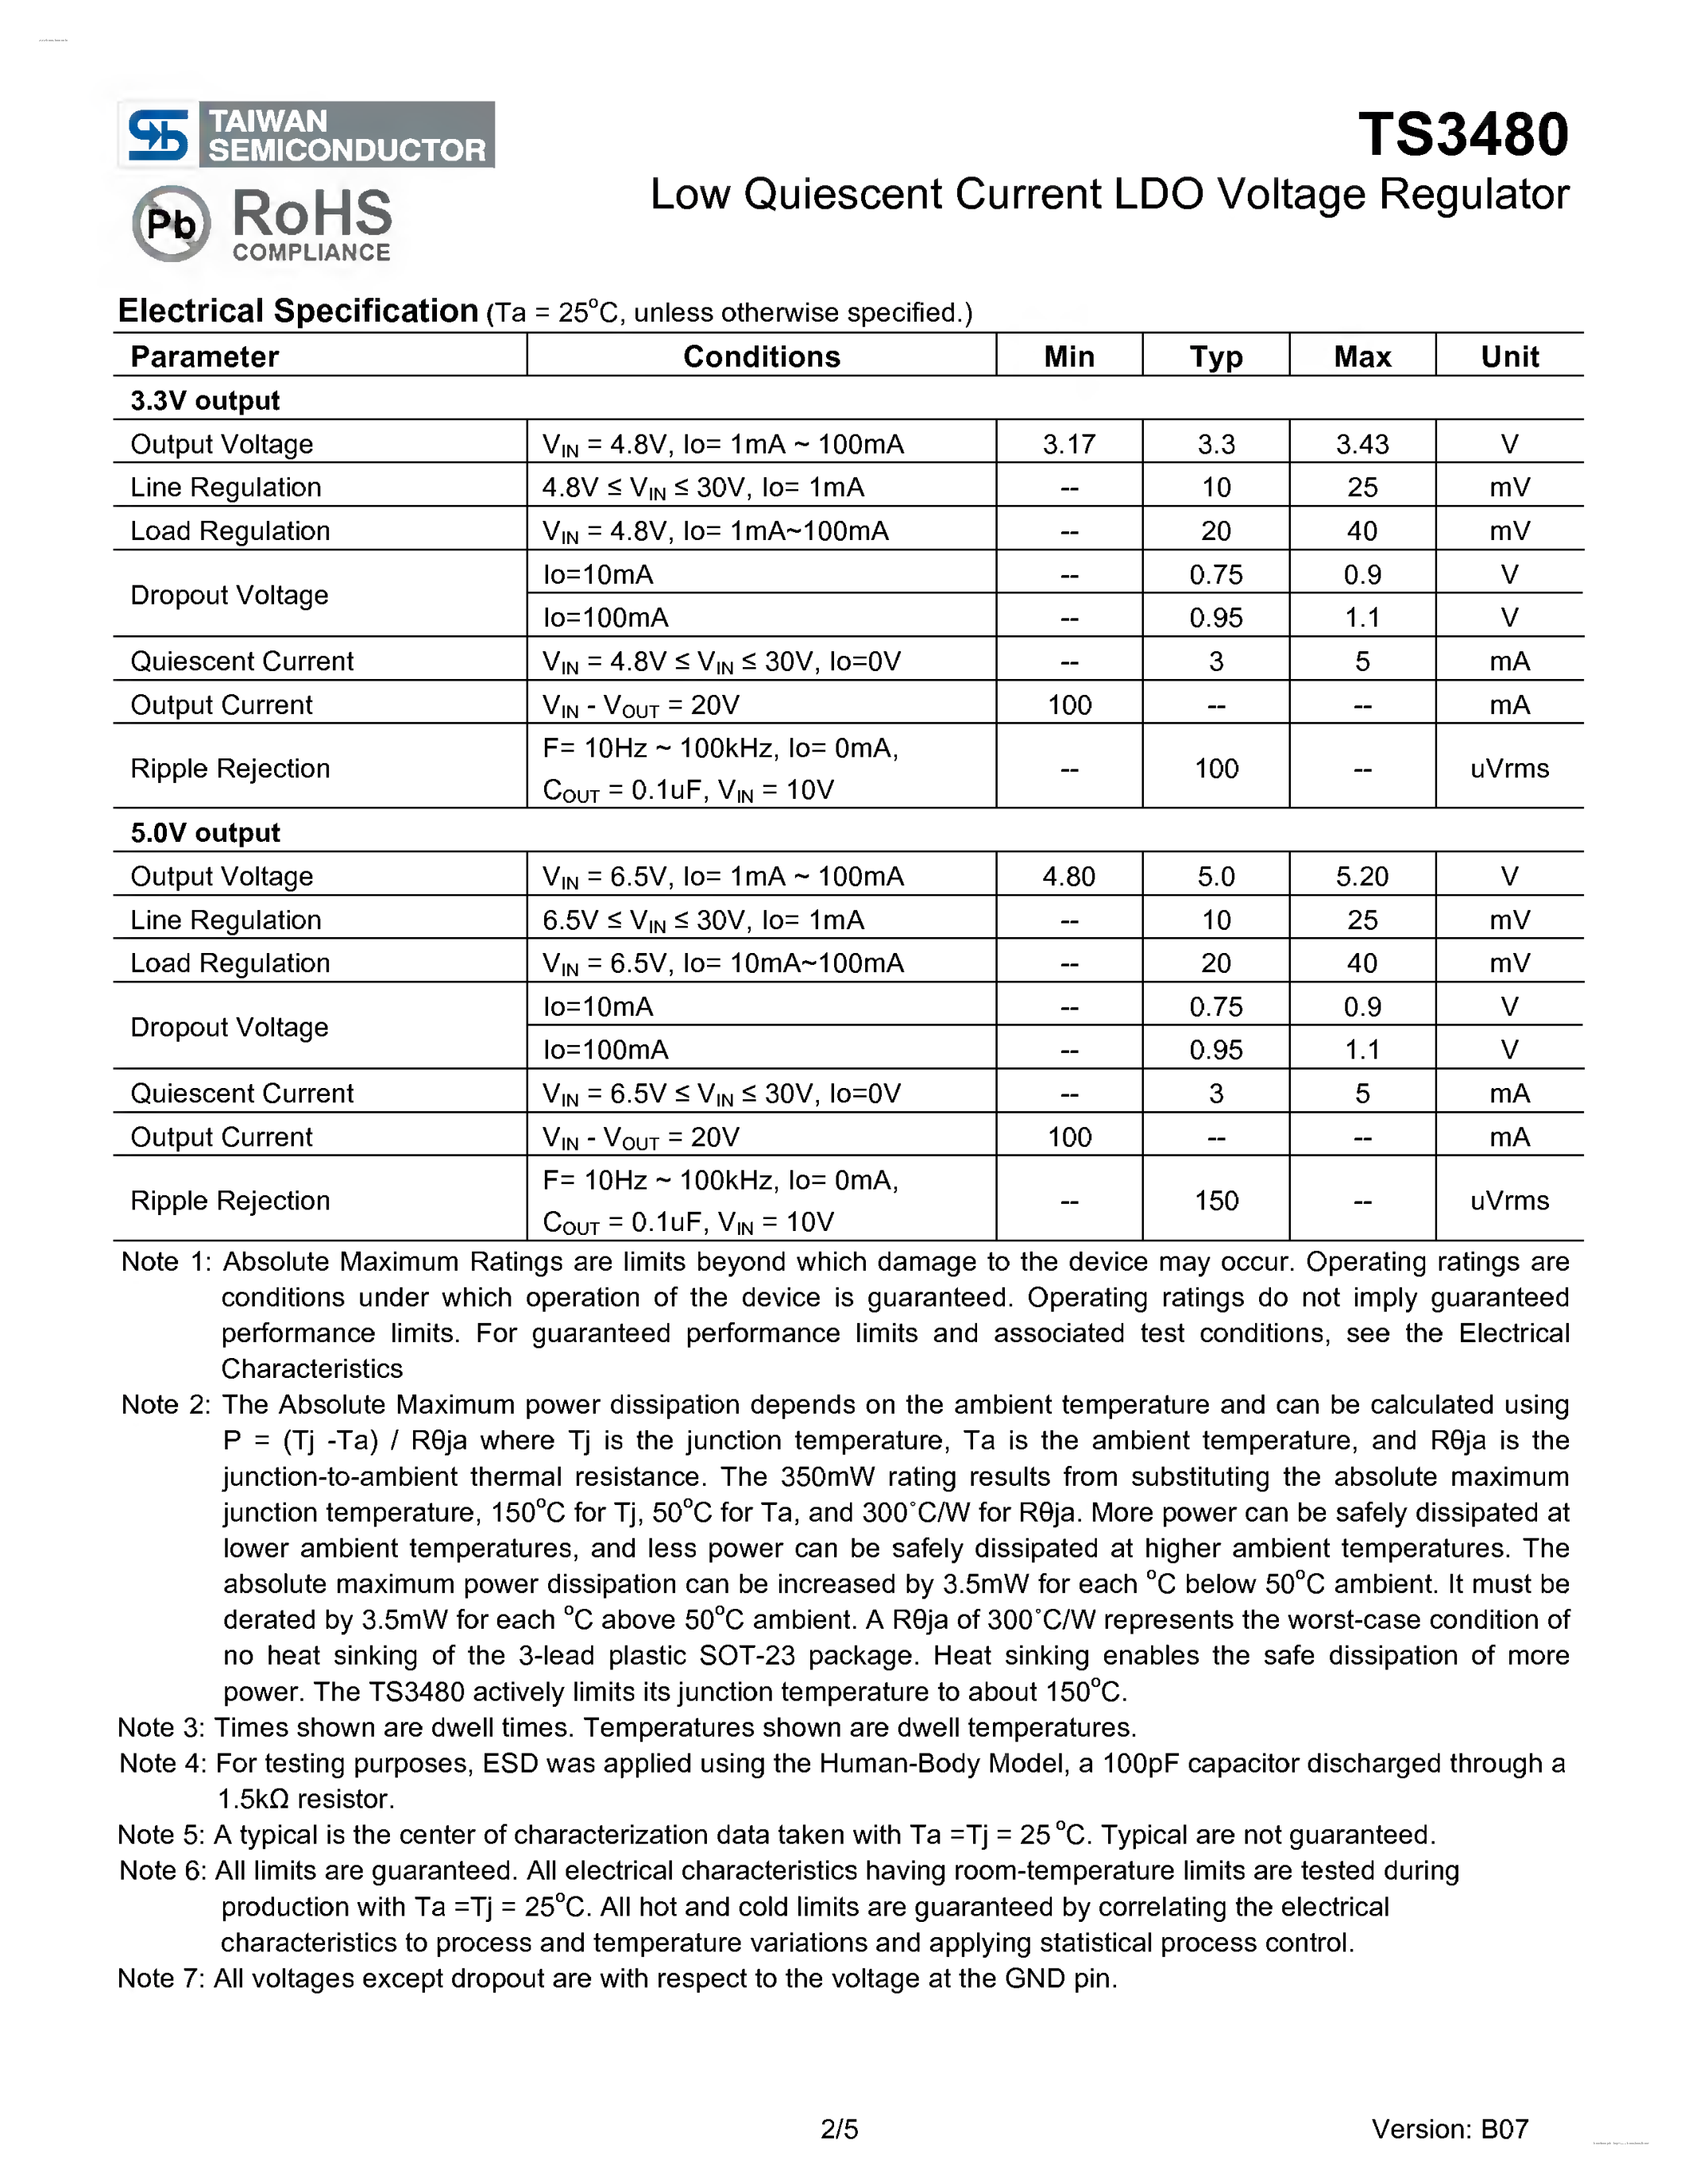 Даташит TS3480 - Low Quiescent Current LDO Voltage Regulator страница 2